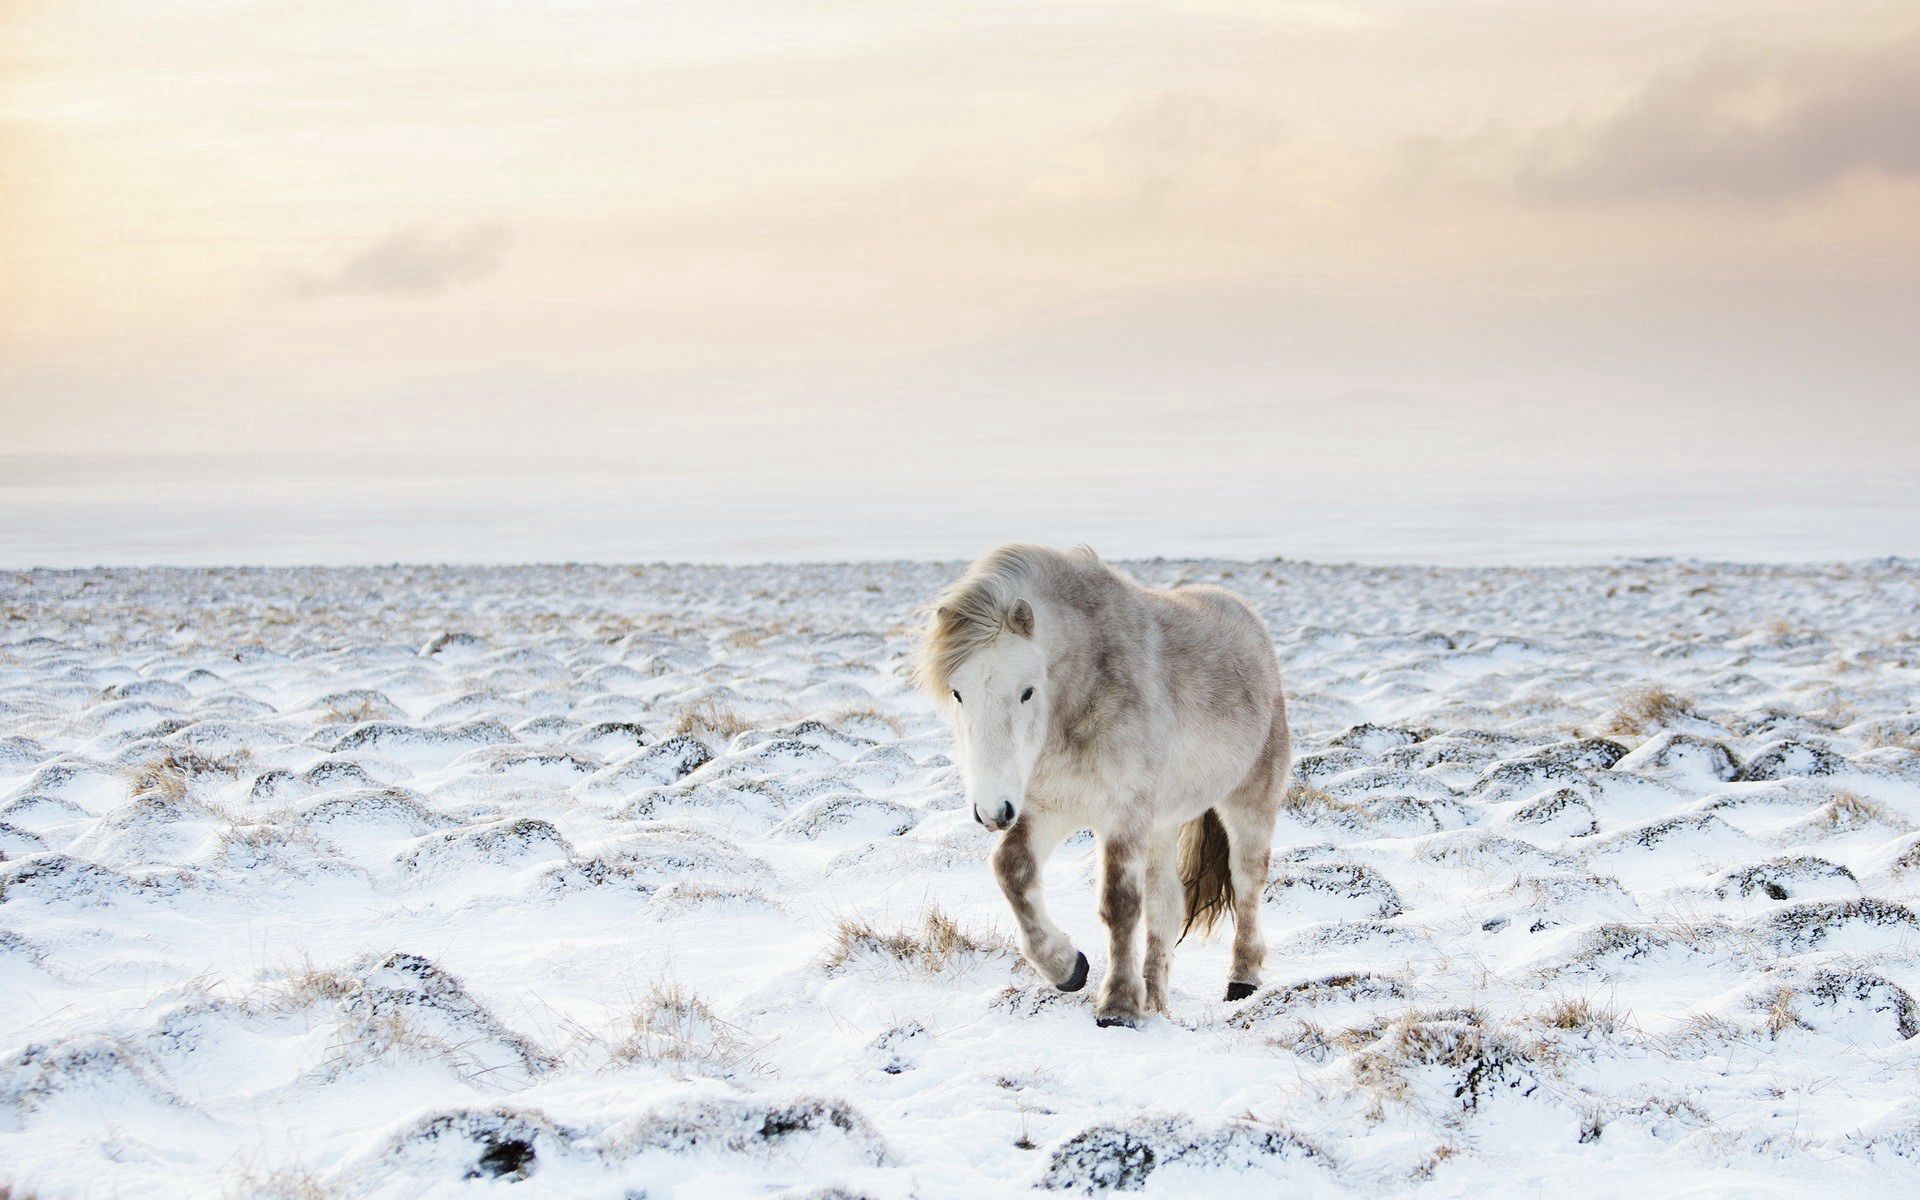 Скачать обои бесплатно Зима, Животные, Лошадь, Снег картинка на рабочий стол ПК